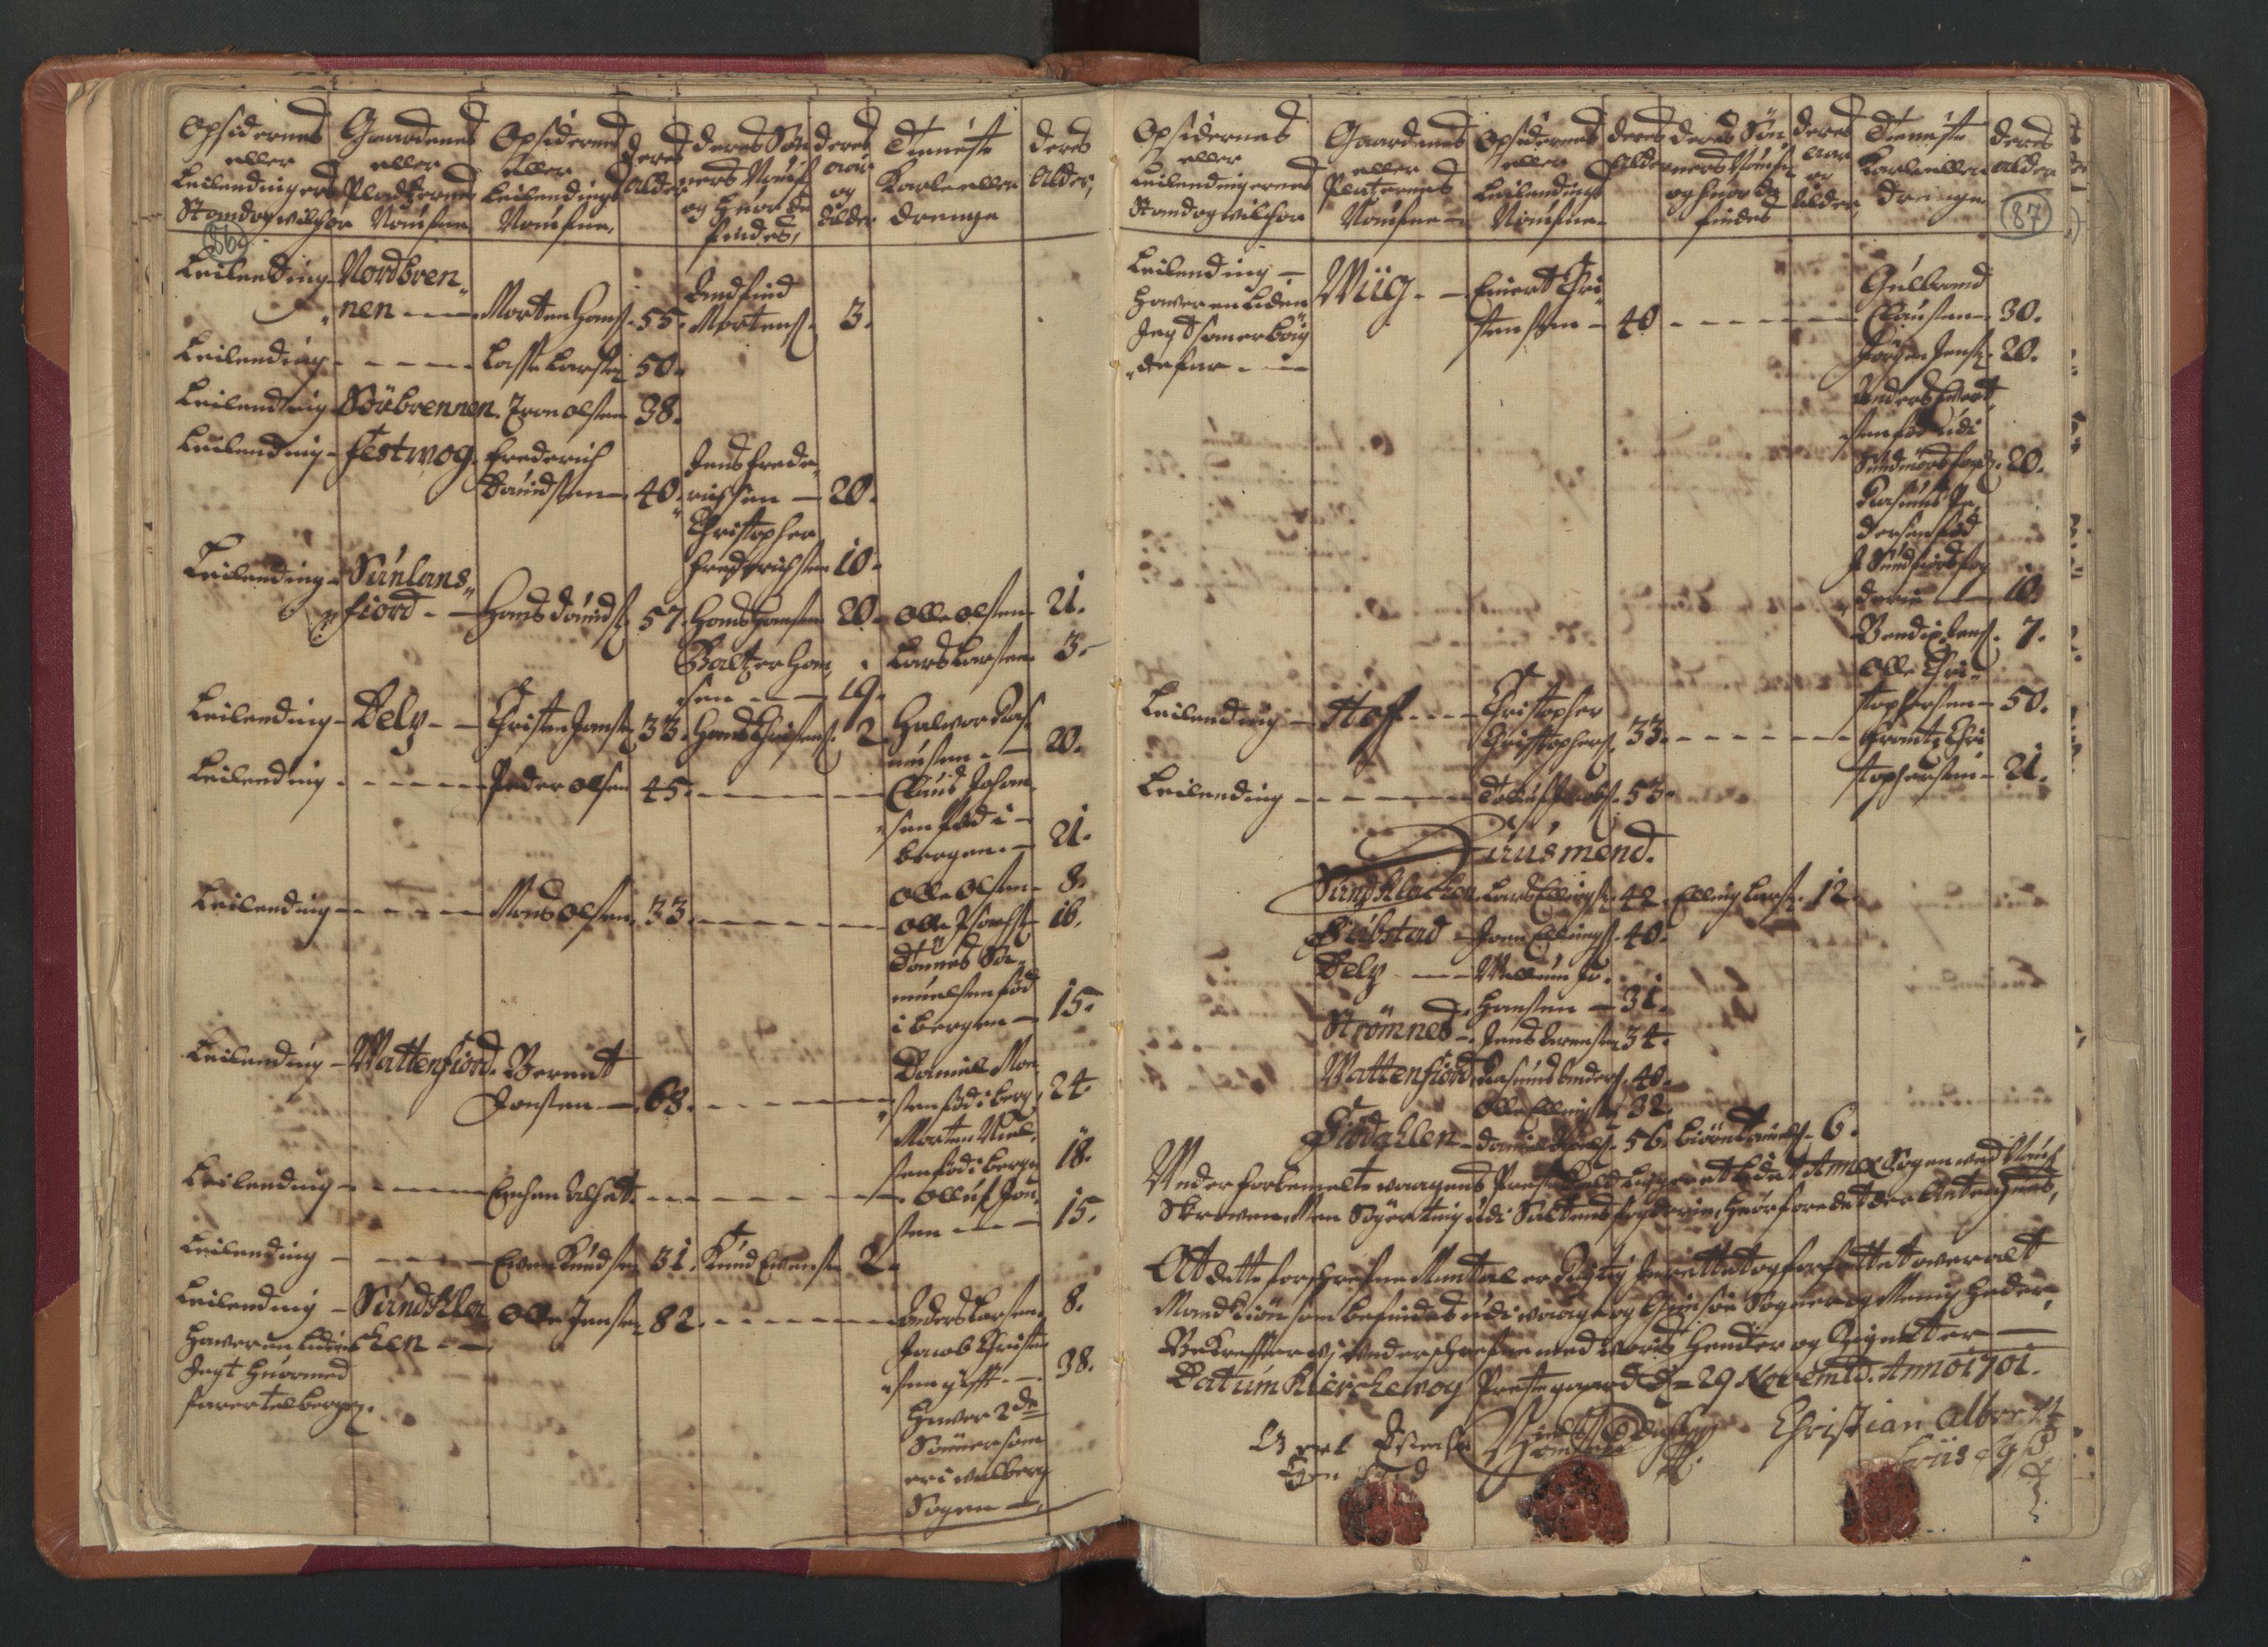 RA, Census (manntall) 1701, no. 18: Vesterålen, Andenes and Lofoten fogderi, 1701, p. 86-87